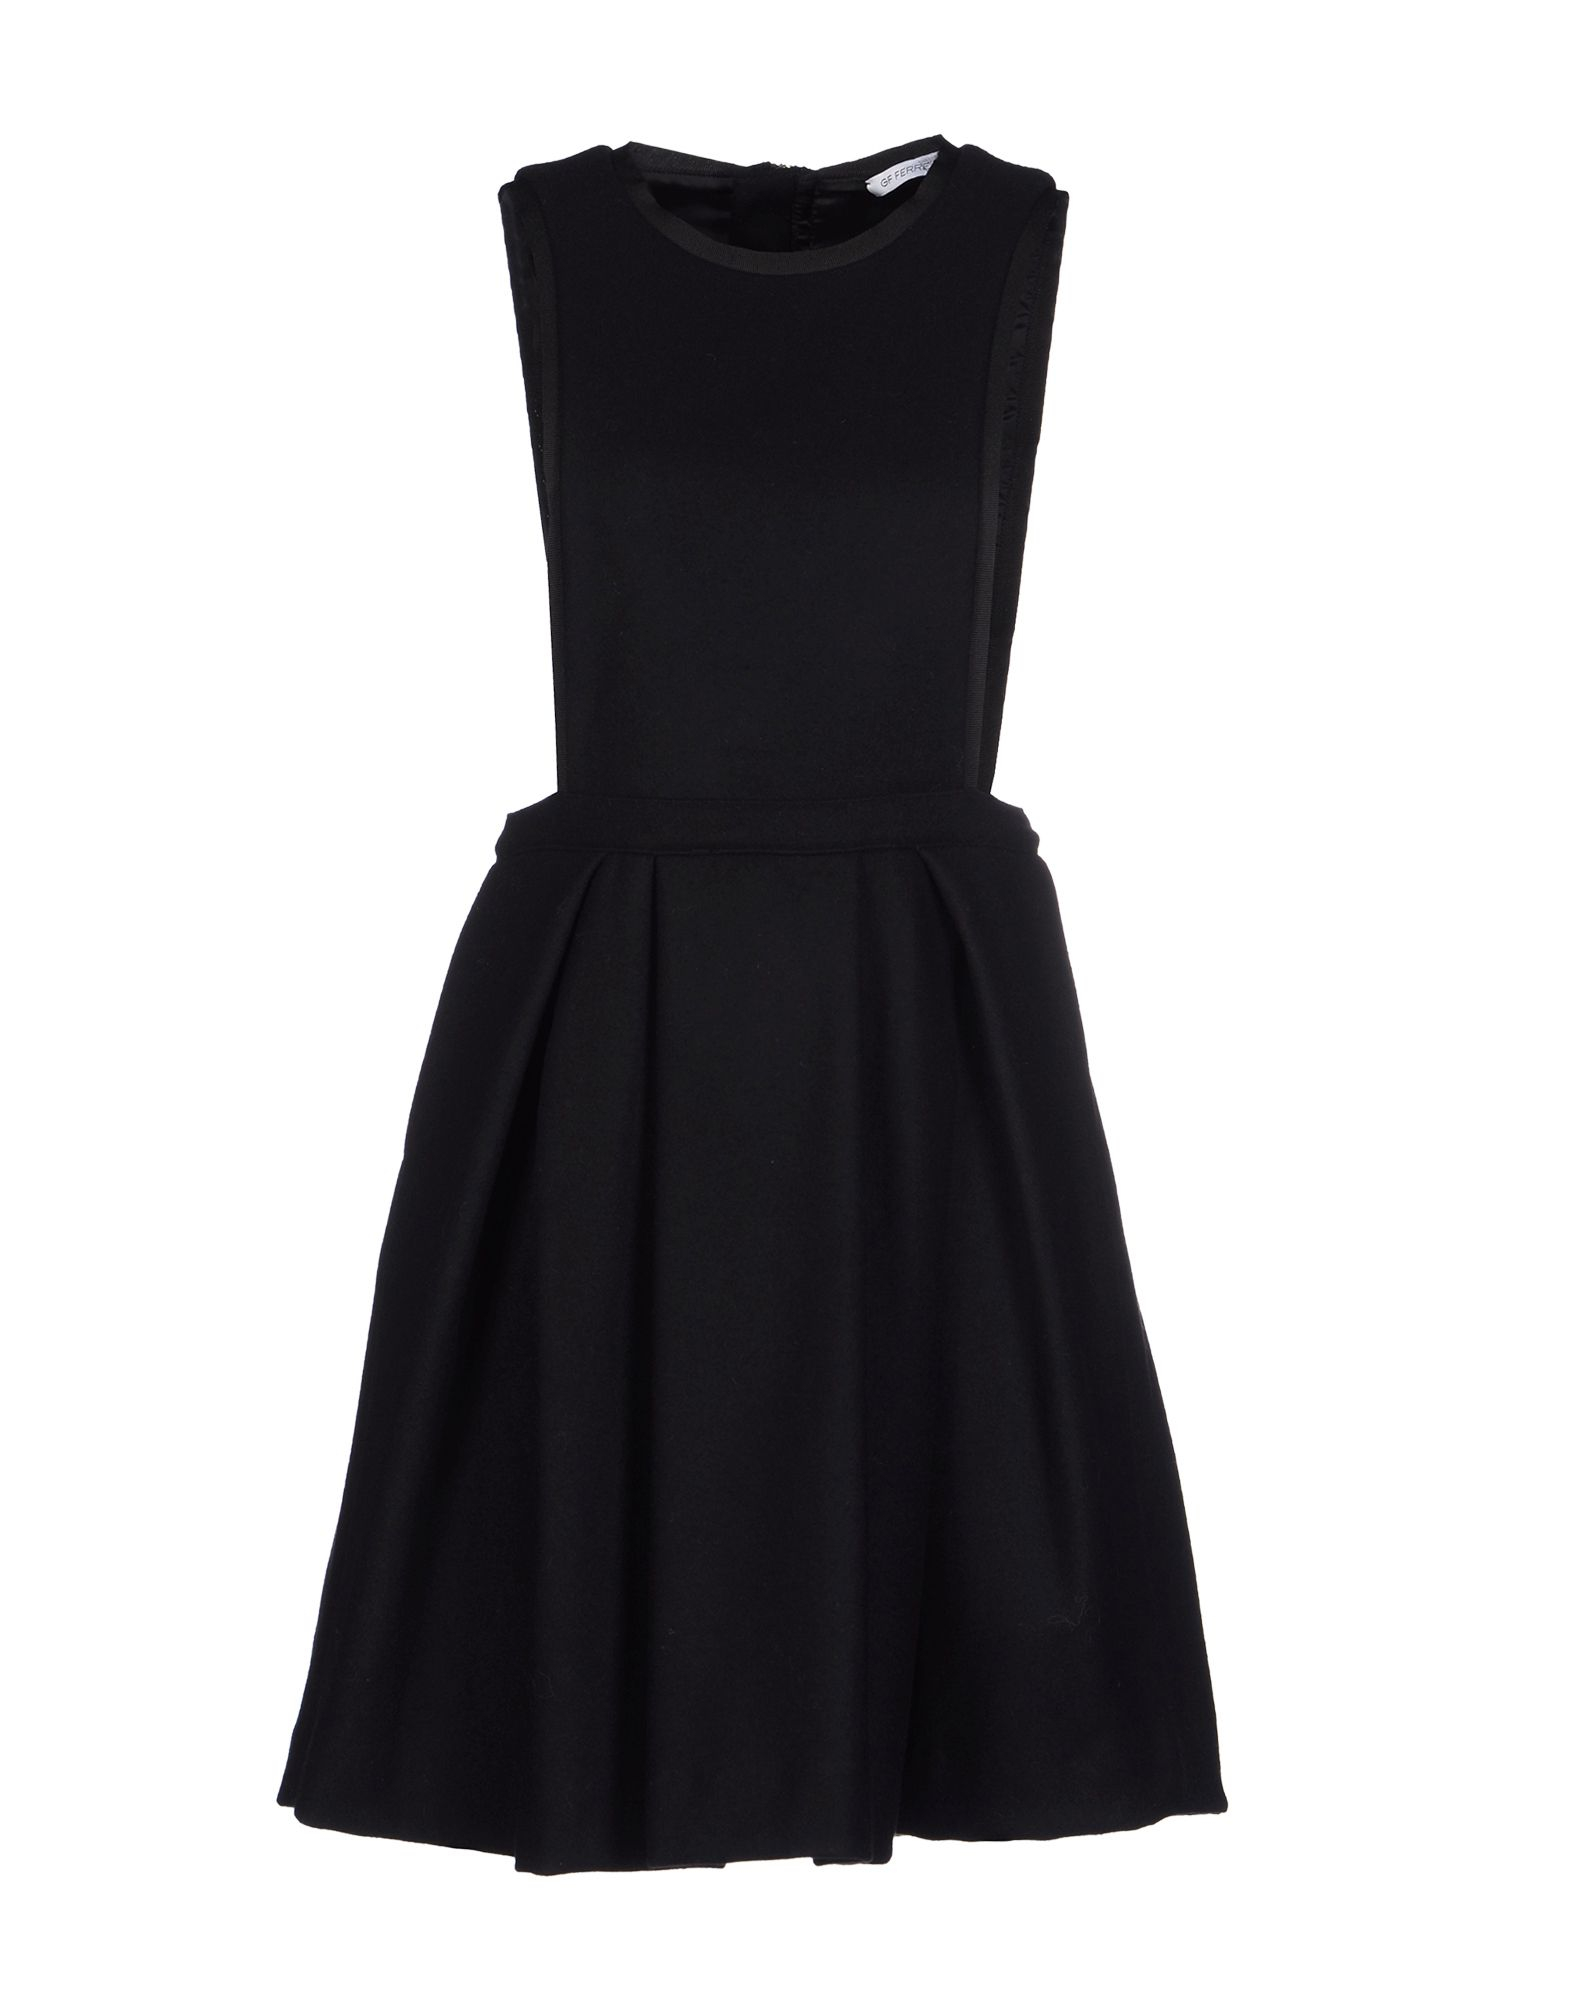 Gianfranco Ferré Short Dress in Black | Lyst